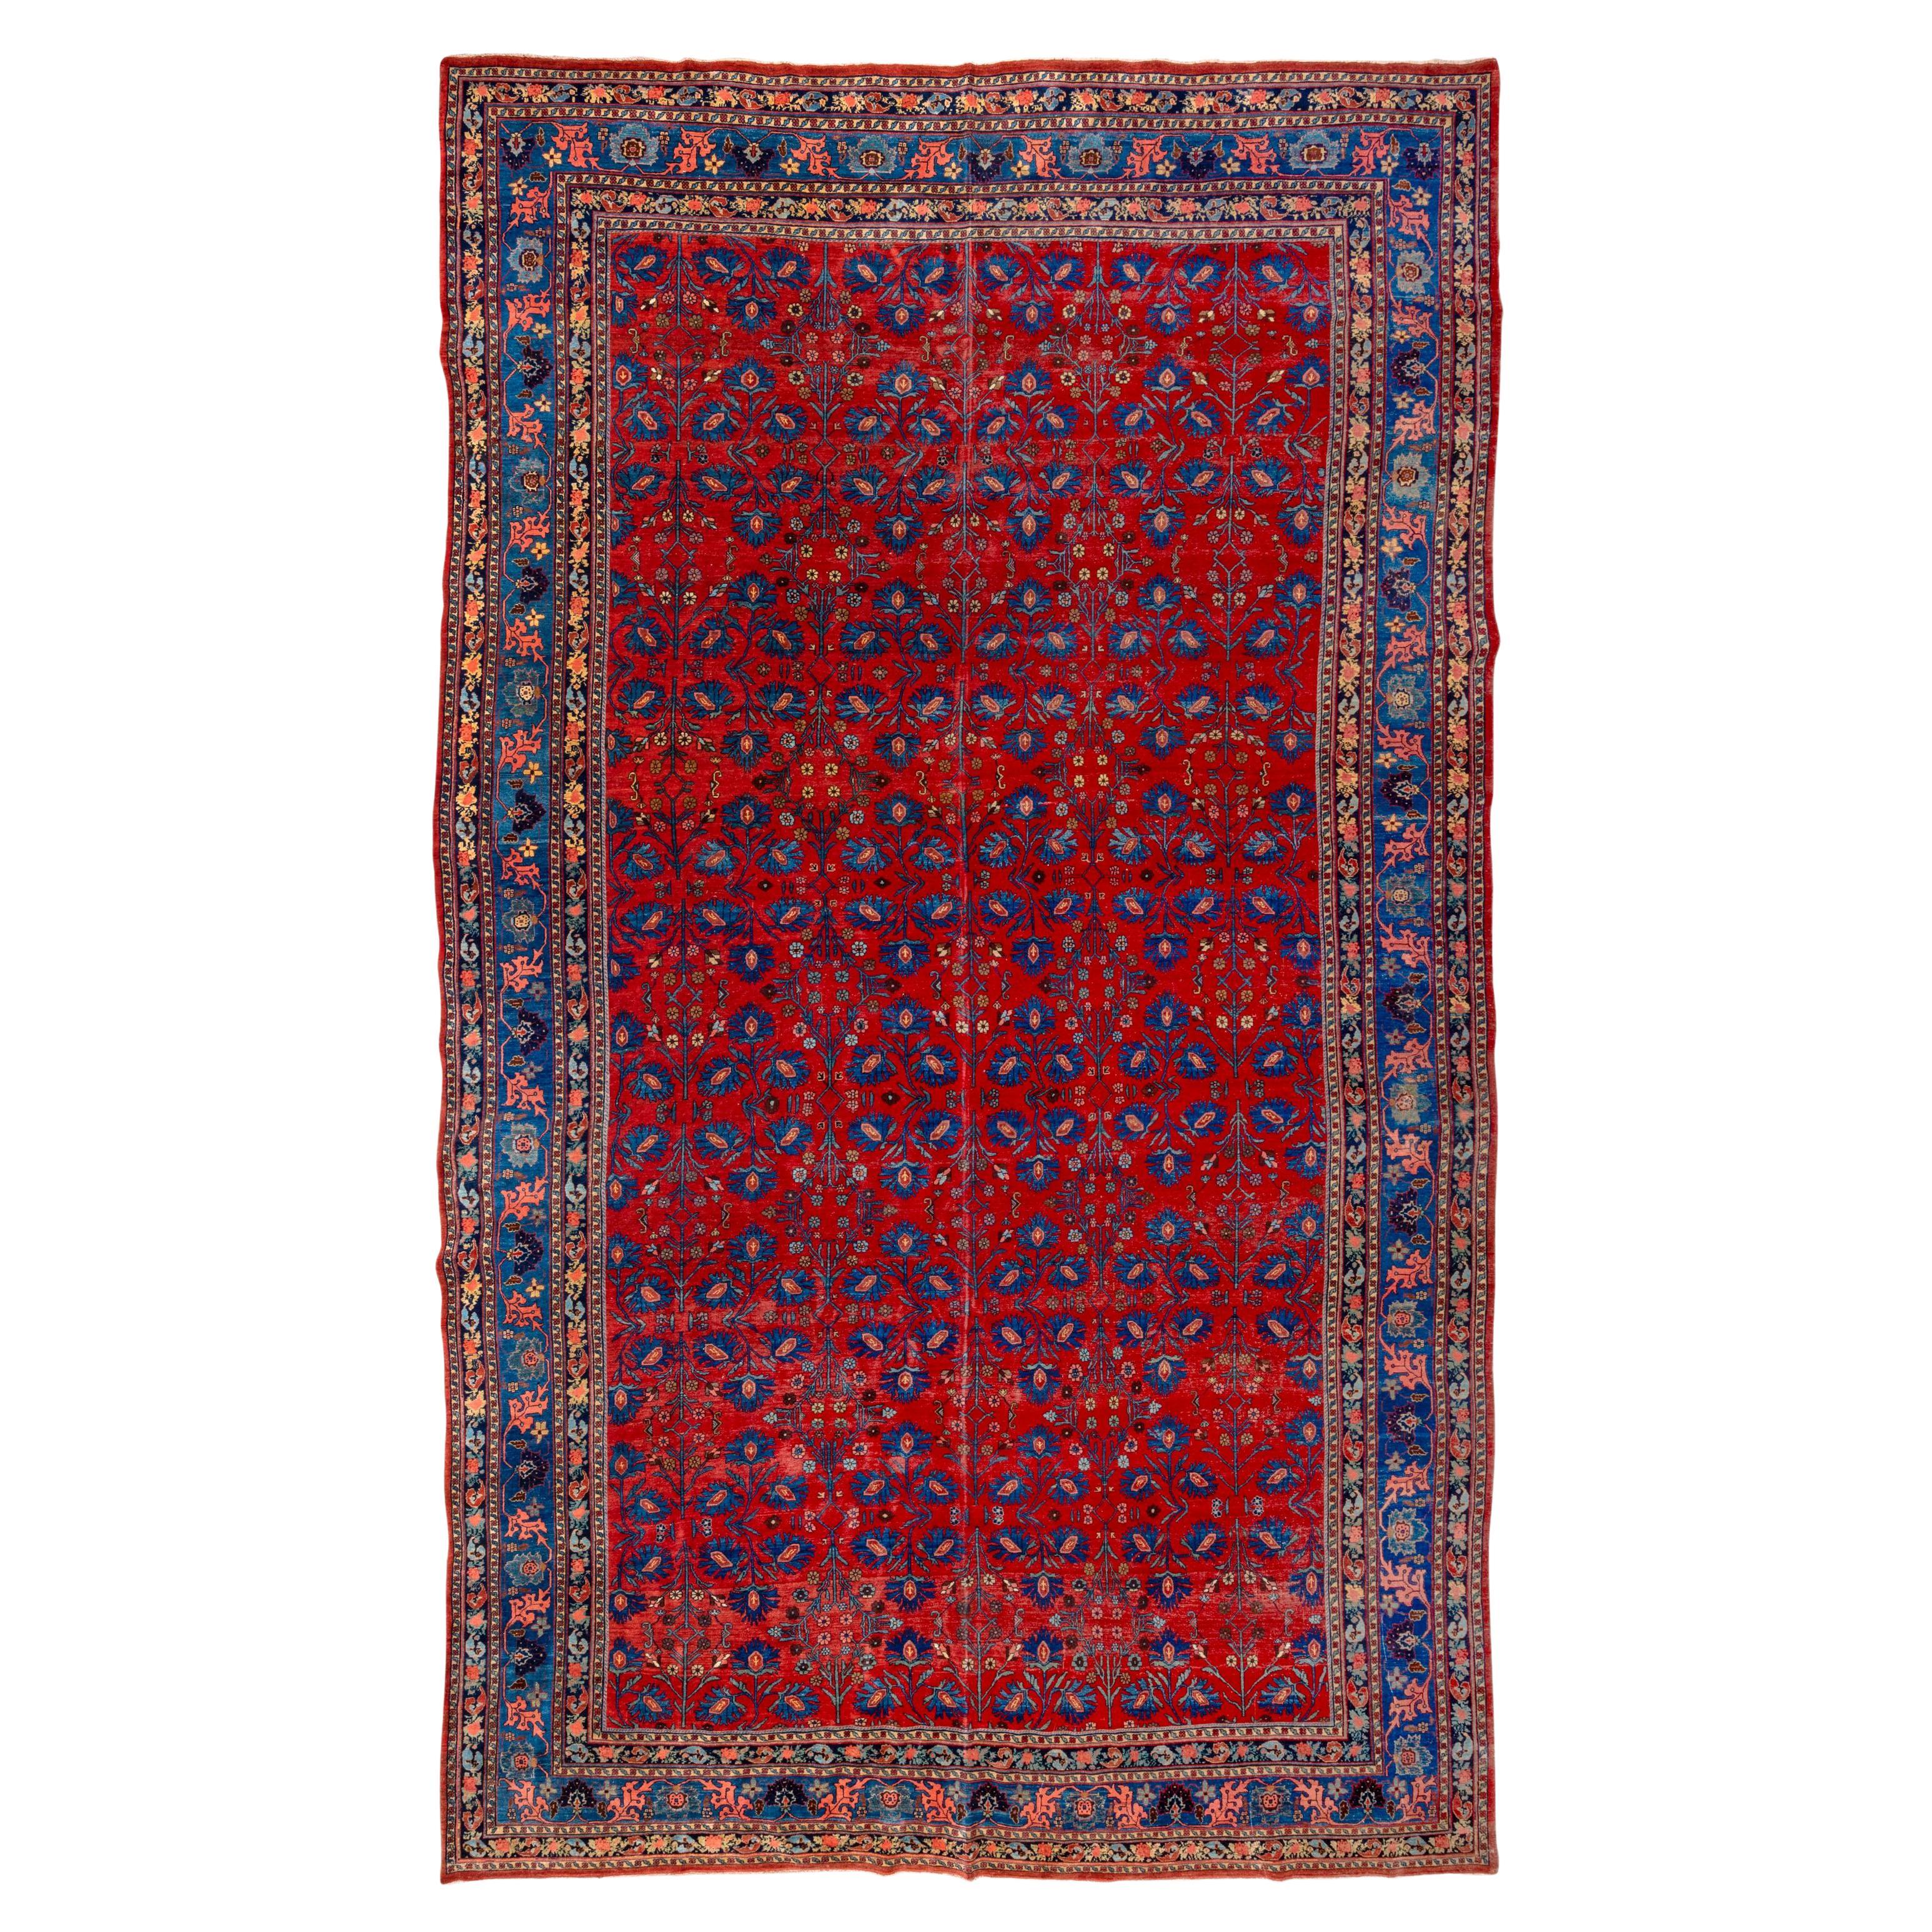 Bright Antique Persian Bidjar Carpet, circa 1900s